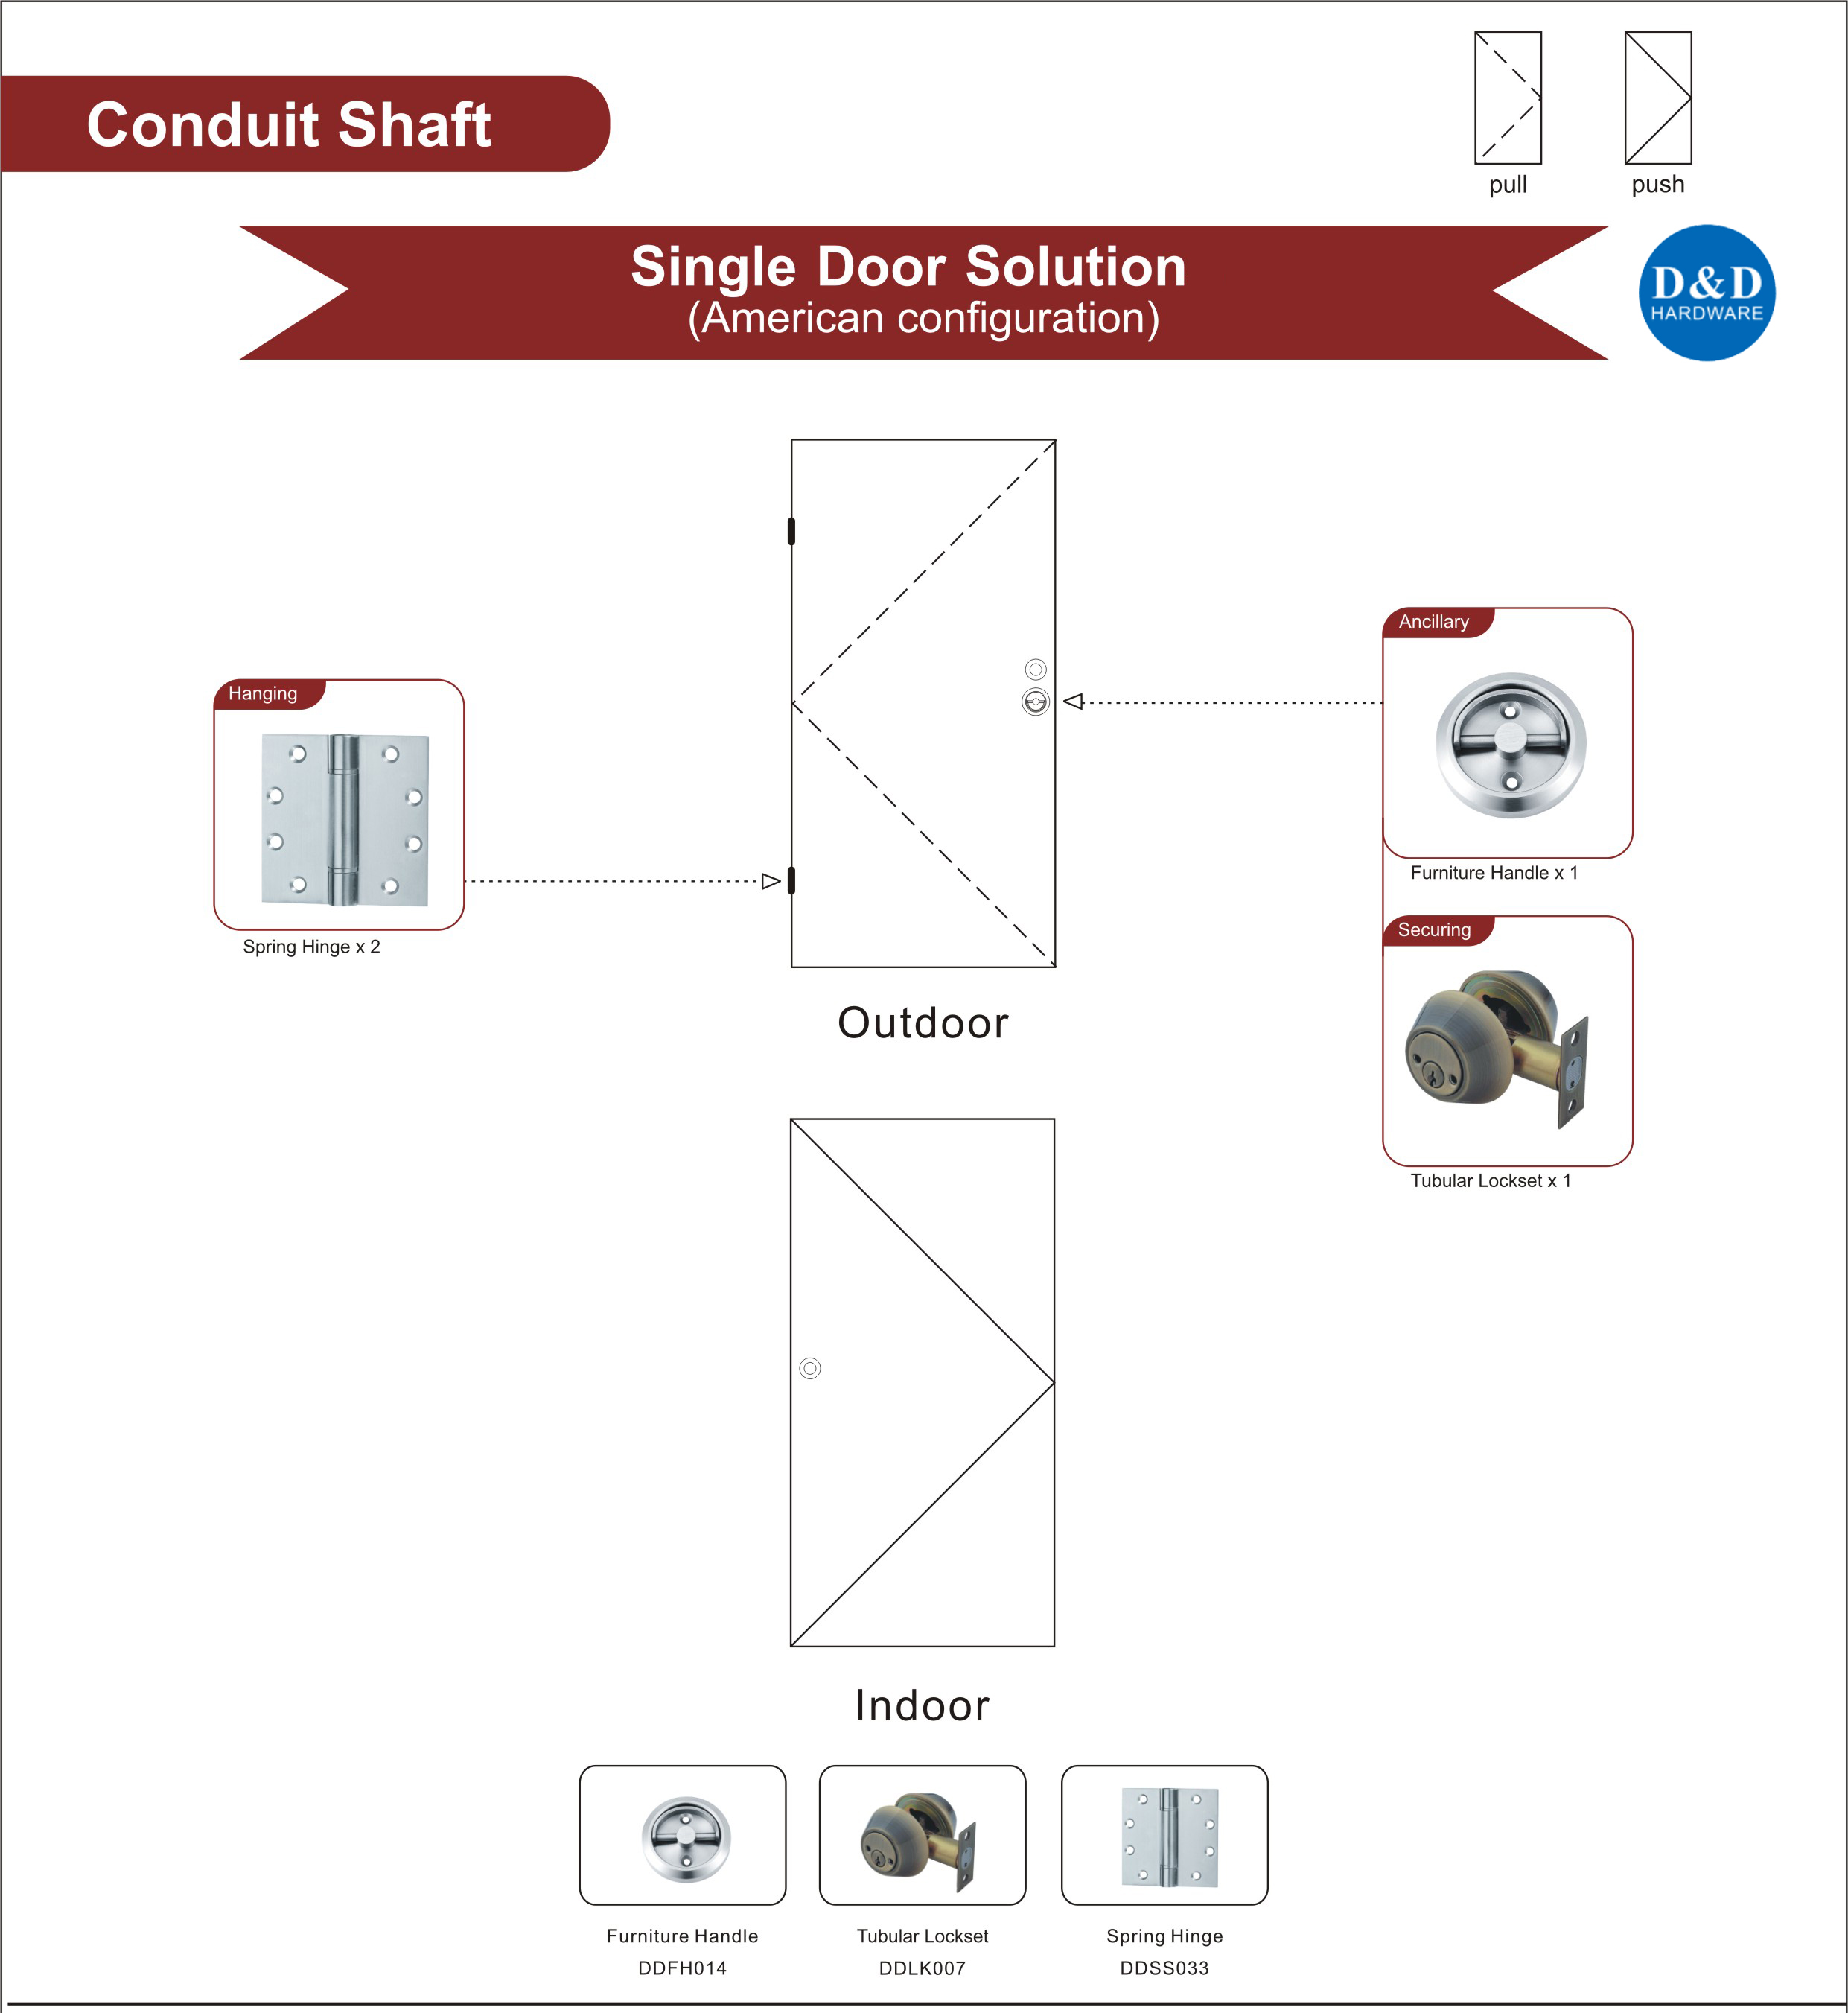 Useful Fire Rated Wooden Door Hardware For Conduit Shaft Single Door